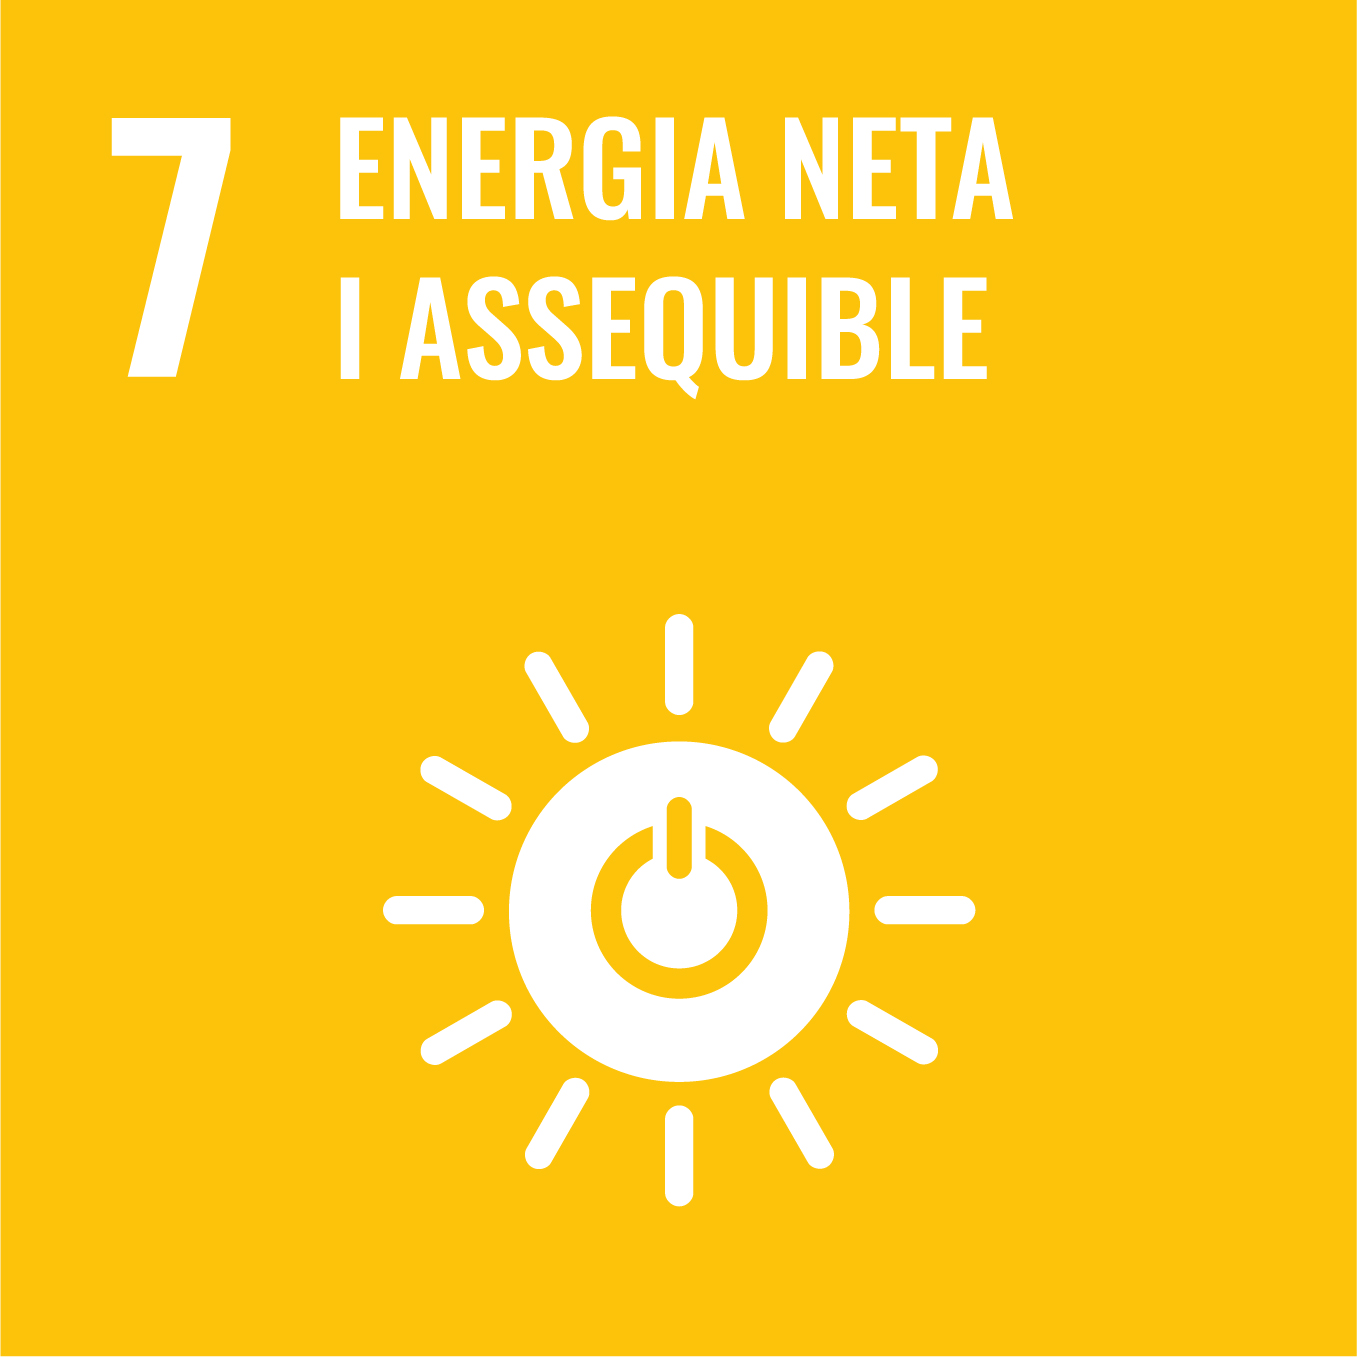 Garantir l’accés a una energia assequible, segura, sostenible i moderna per a tothom